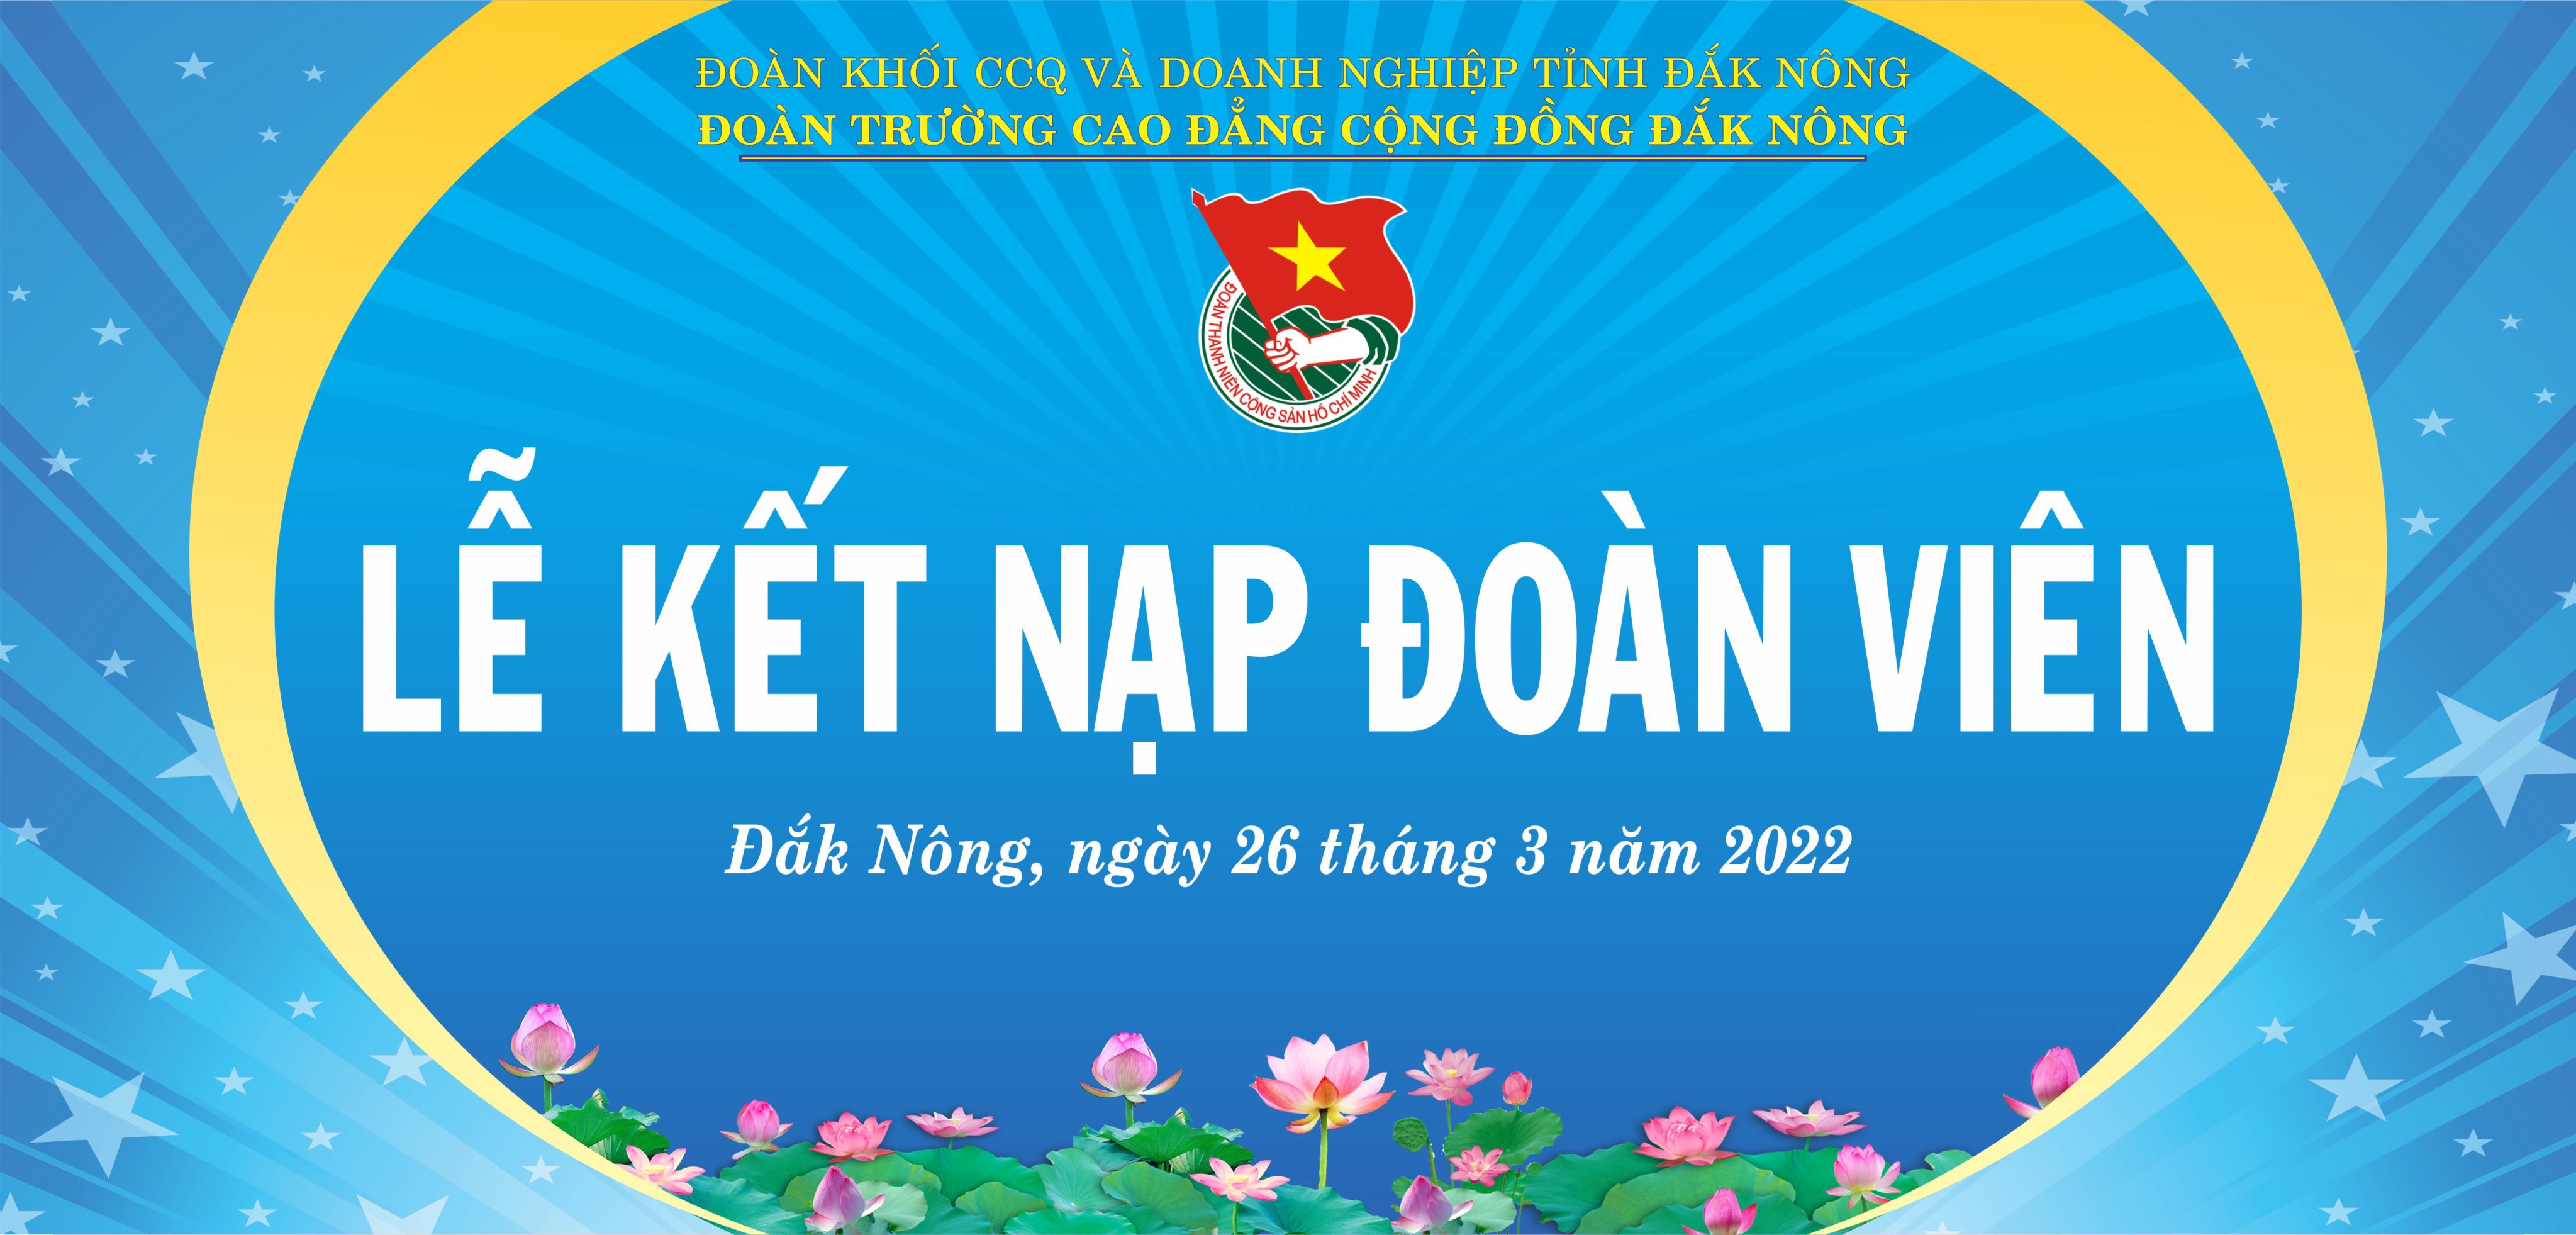 Kỷ niệm 91 năm thành lập Đoàn là dịp để cùng nhau tôn vinh những đóng góp của Đoàn Thanh niên Việt Nam trong suốt hơn 90 năm qua. Xem hình ảnh liên quan để chiêm ngưỡng các hoạt động tri ân và cùng nhau đồng hành với người trẻ Việt Nam.